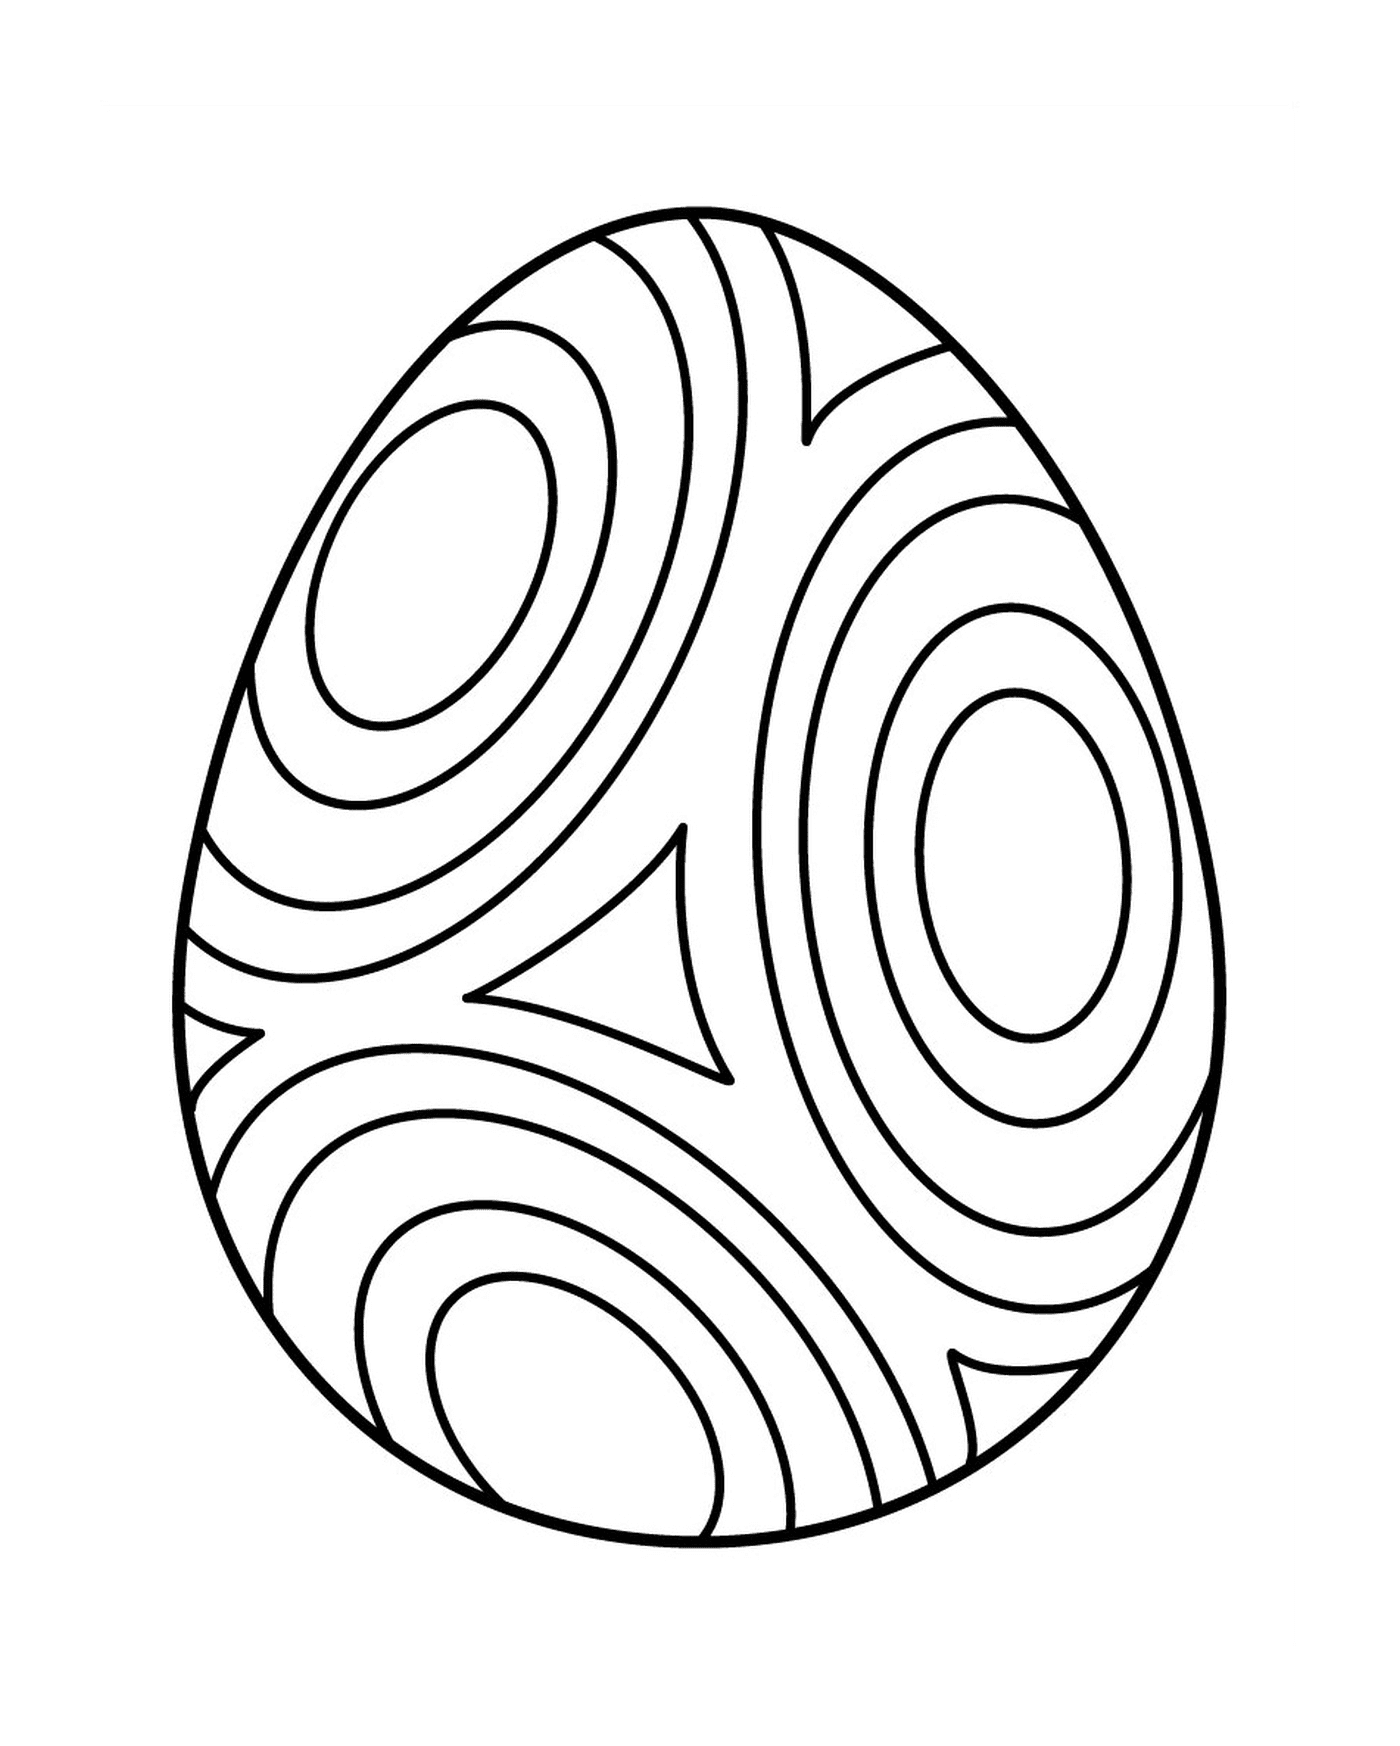  Huevo de Pascua con círculo, un huevo colorido 